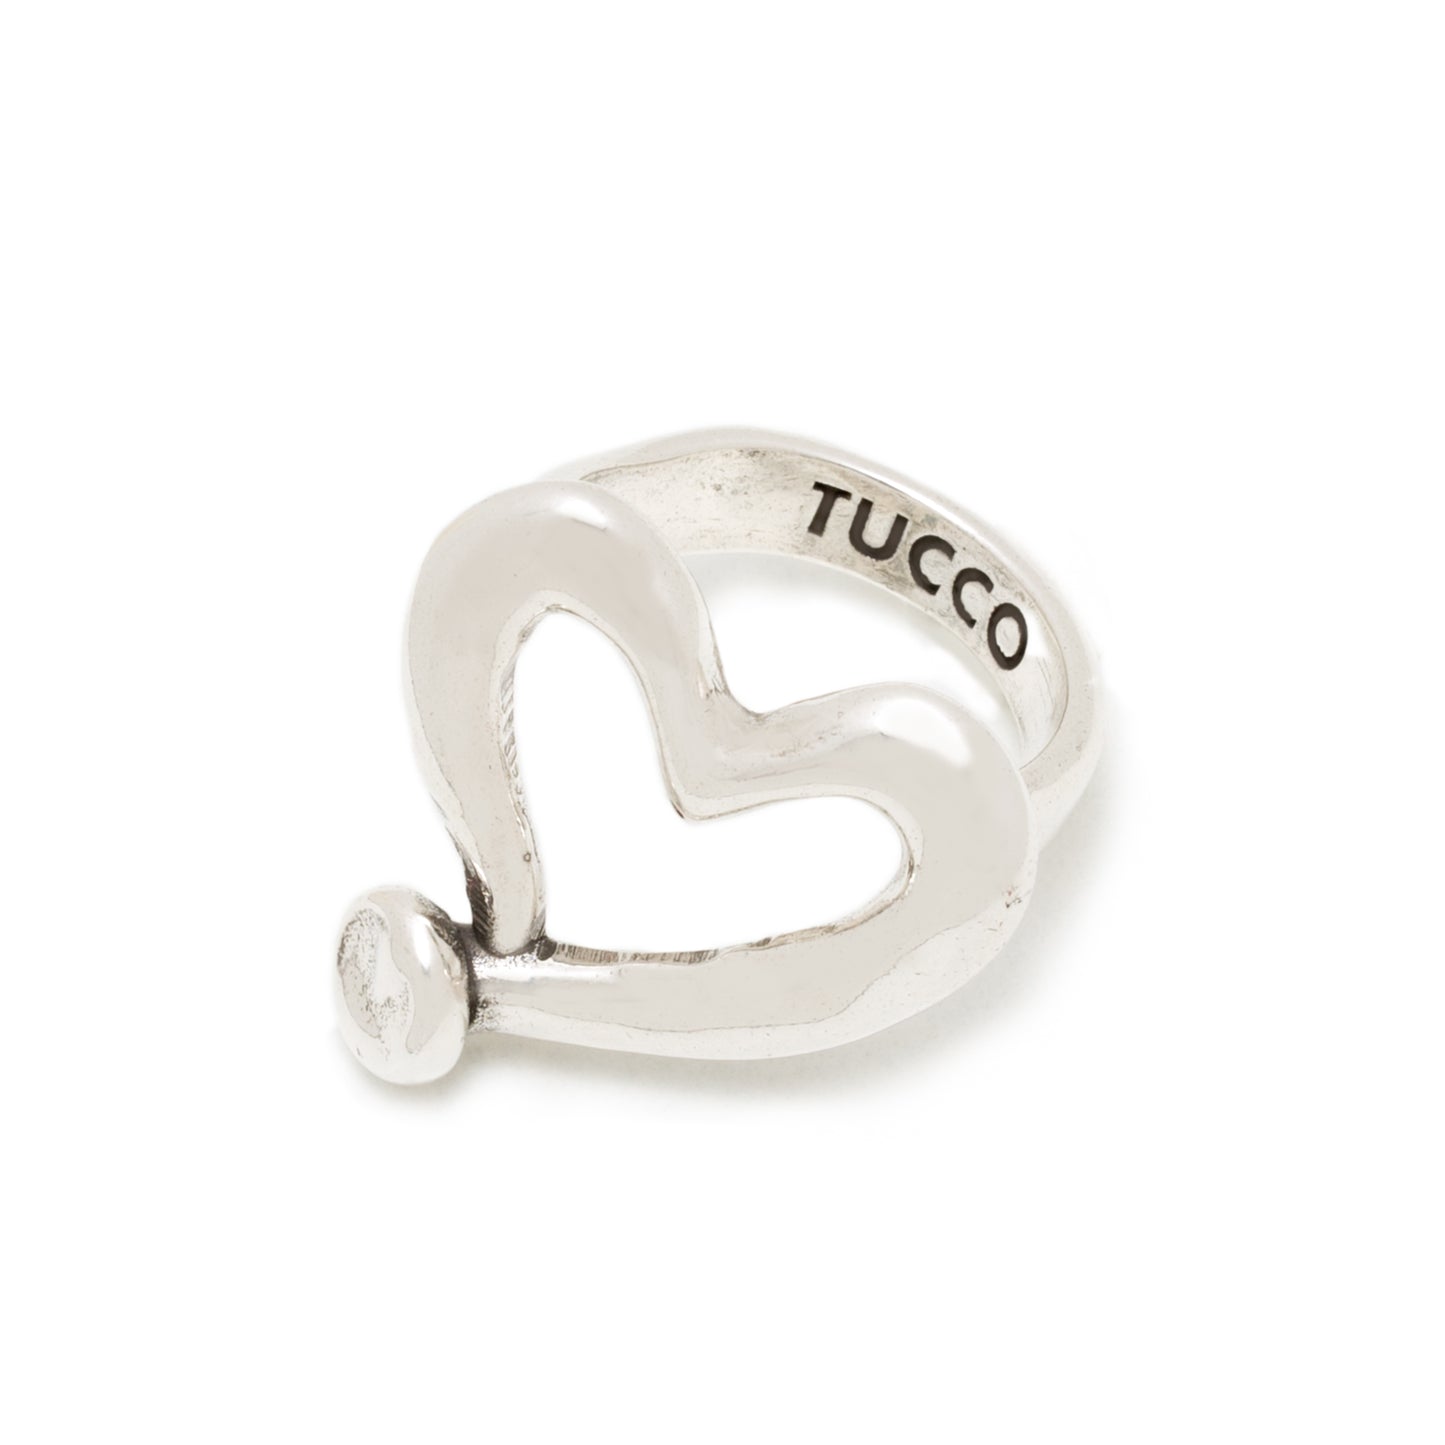 Tucco- Colección corazón plata- Se vende por separado